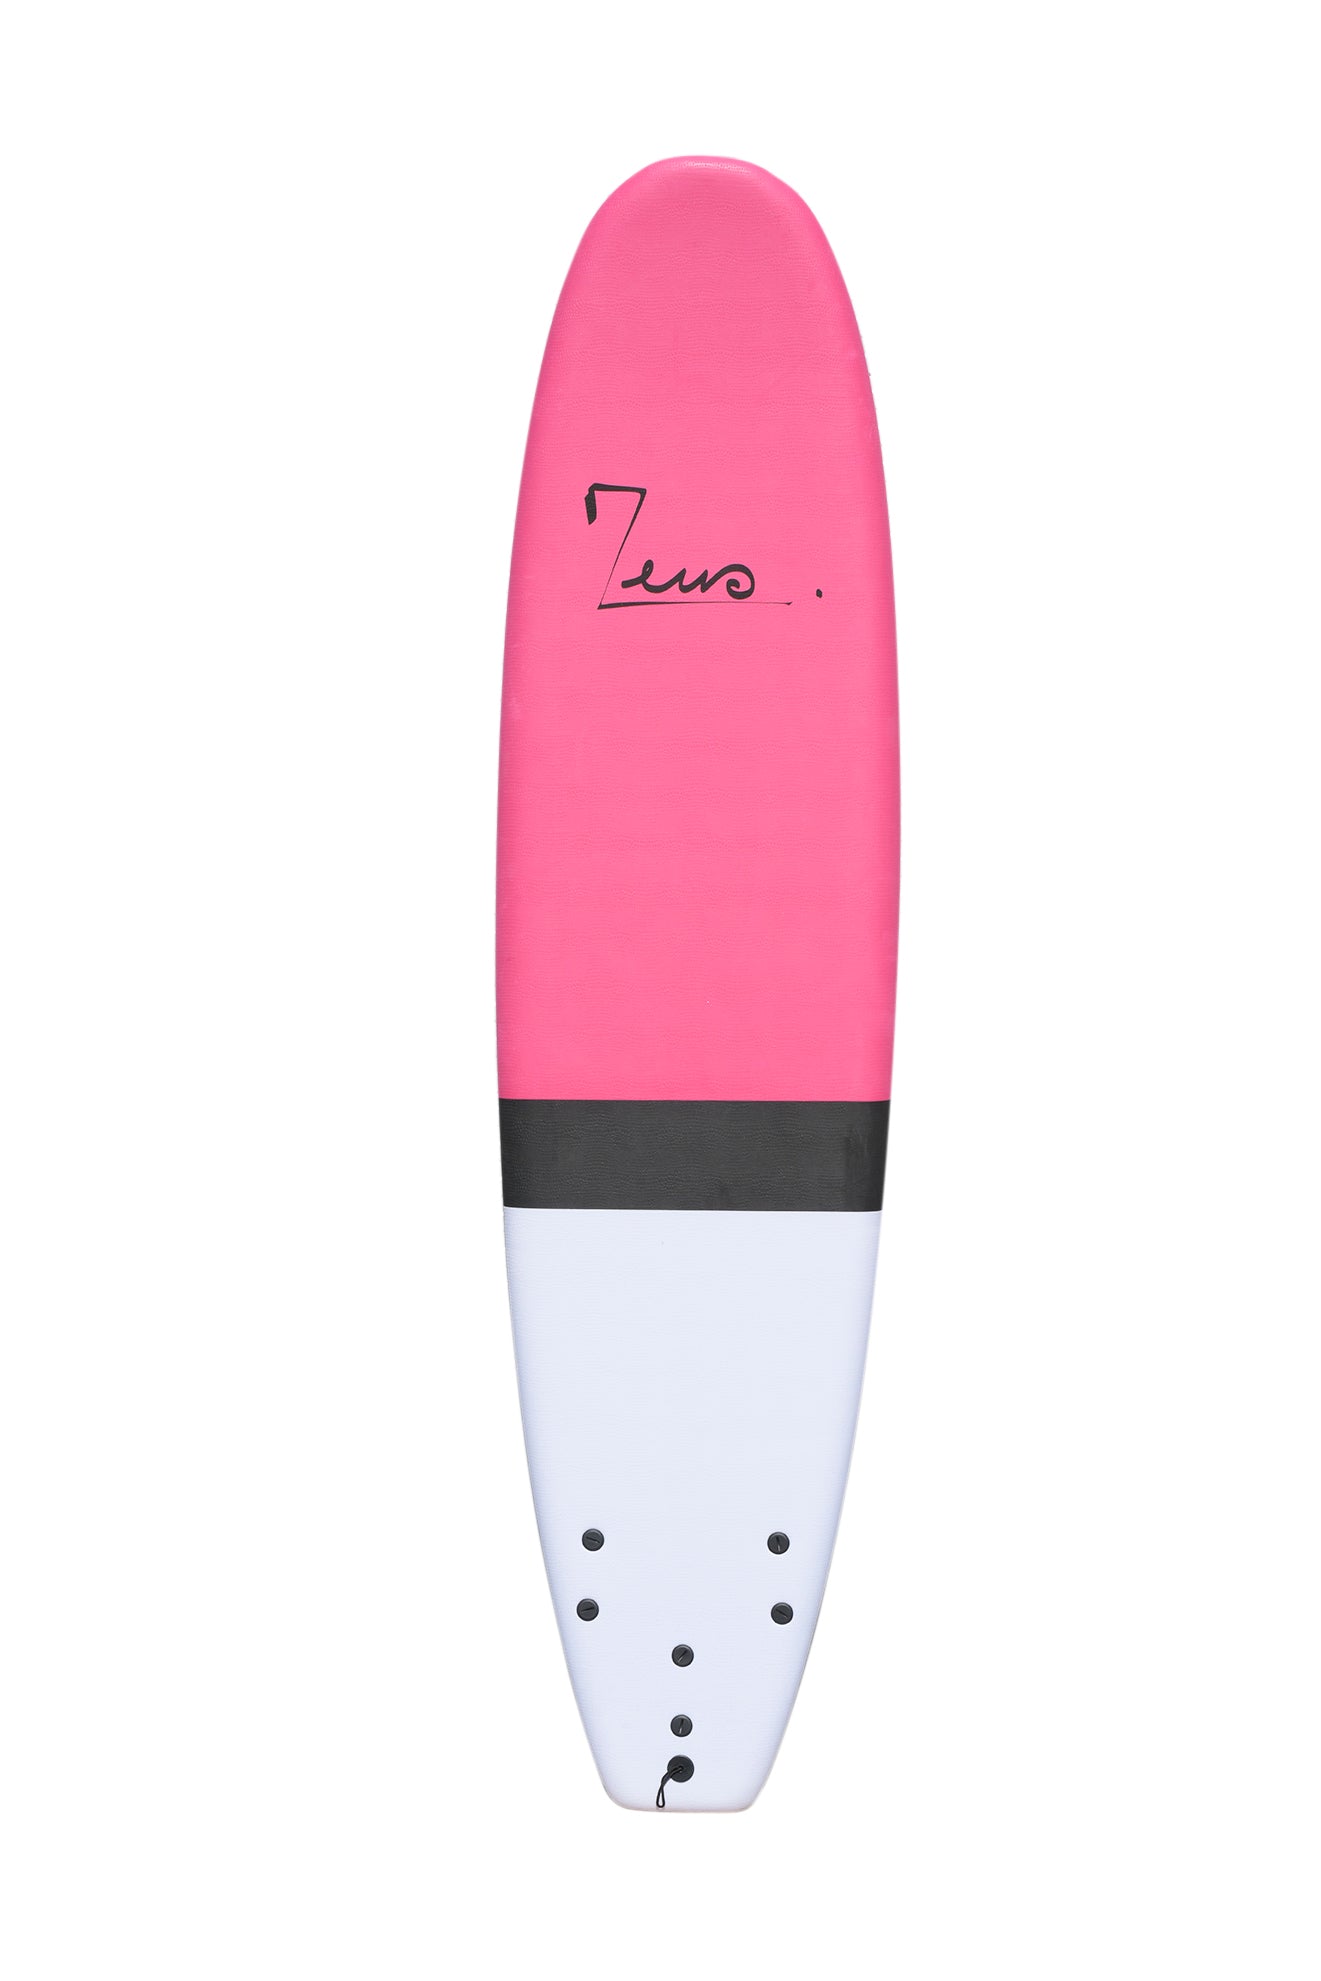 Zeus Rosa 7'6product_type#surf_#surfshop#_zeus-surfboards_